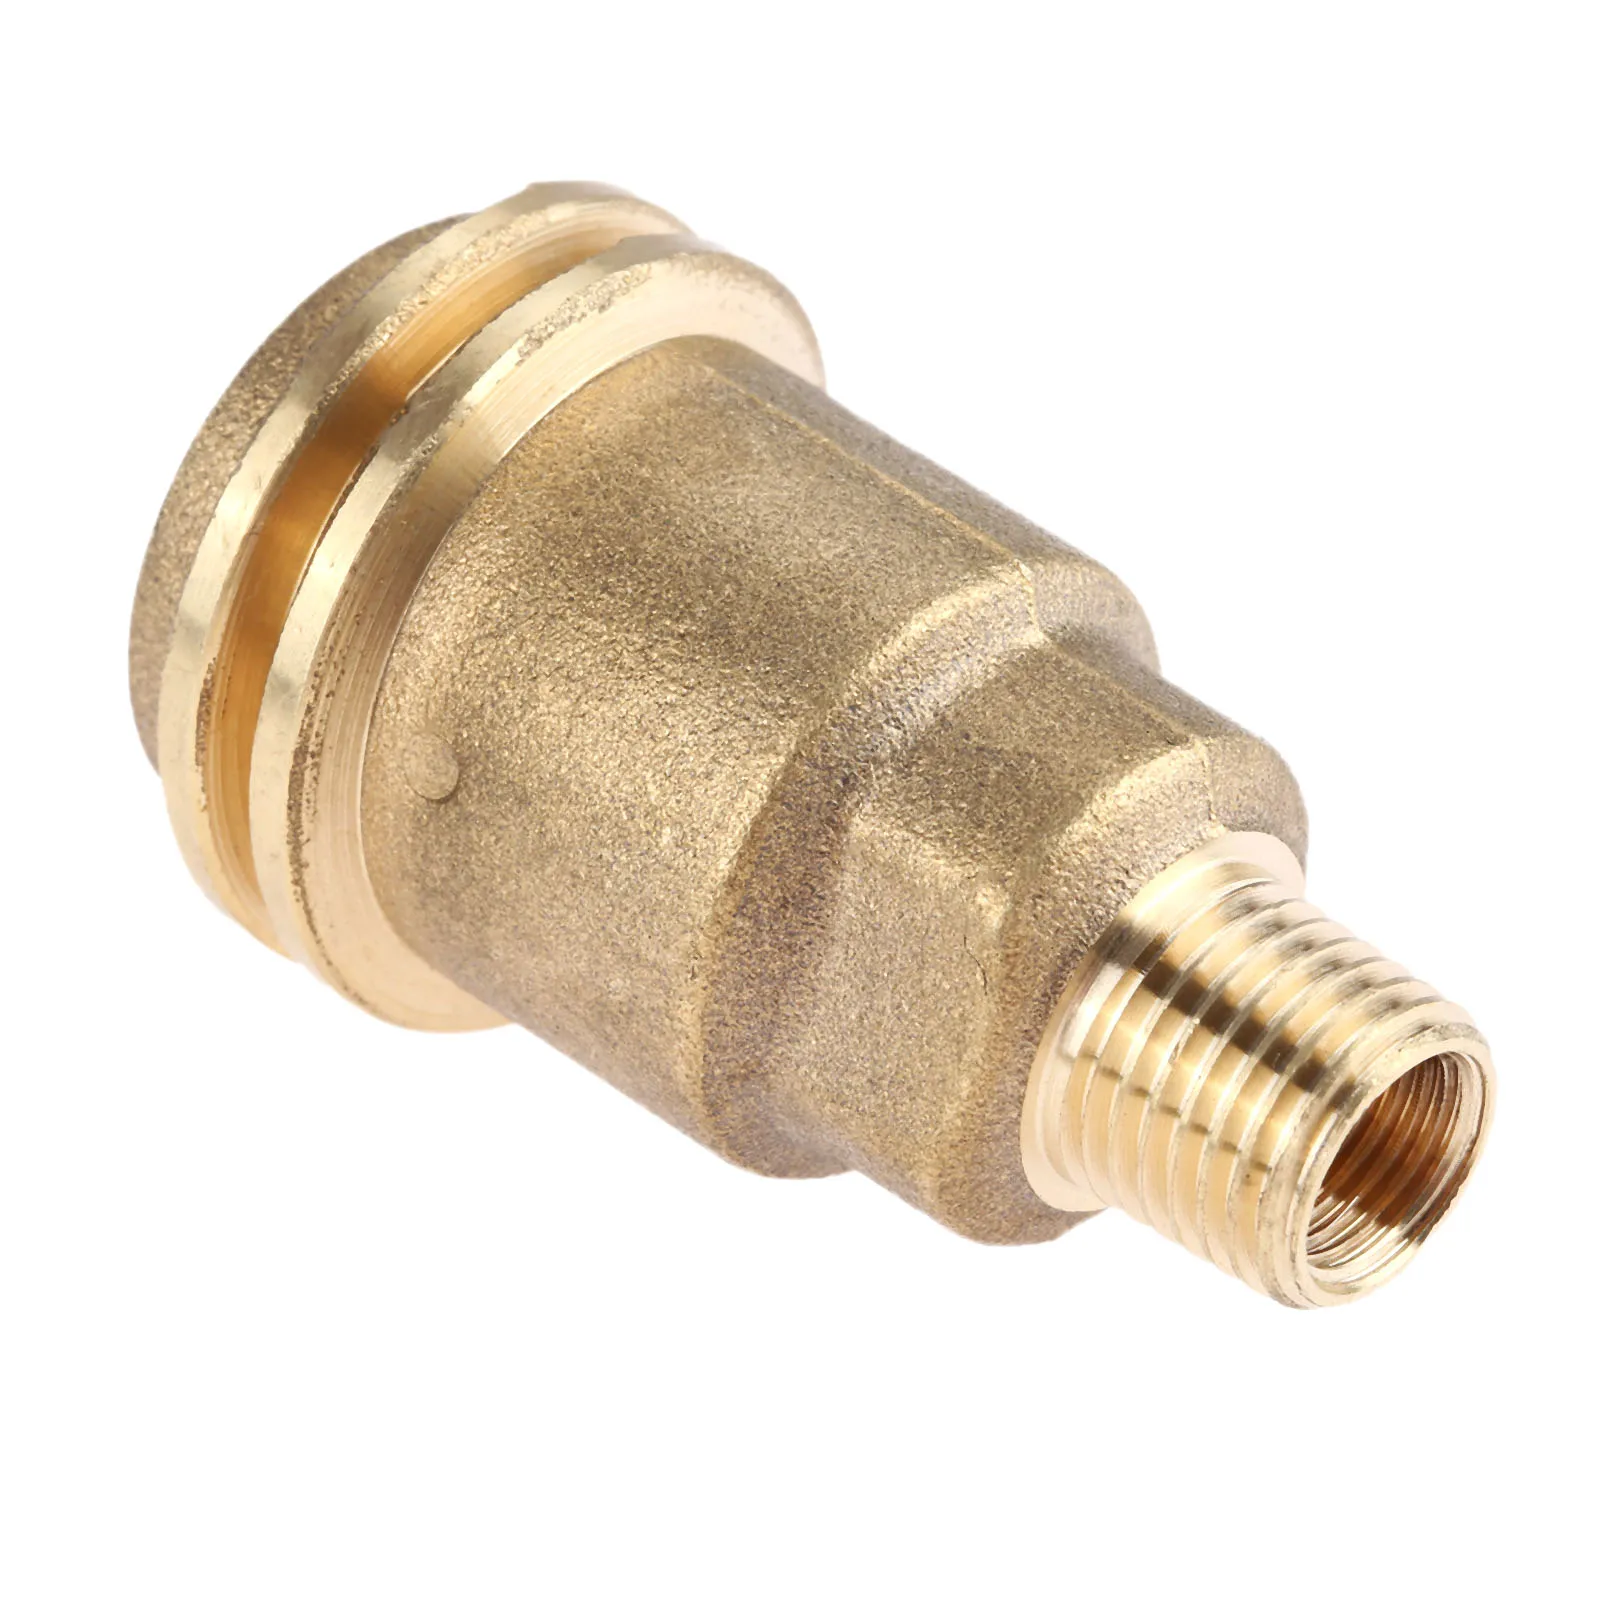 1pc Solide Messing Propan Gas Rohr Gewinde Adapter (Männlichen QCC